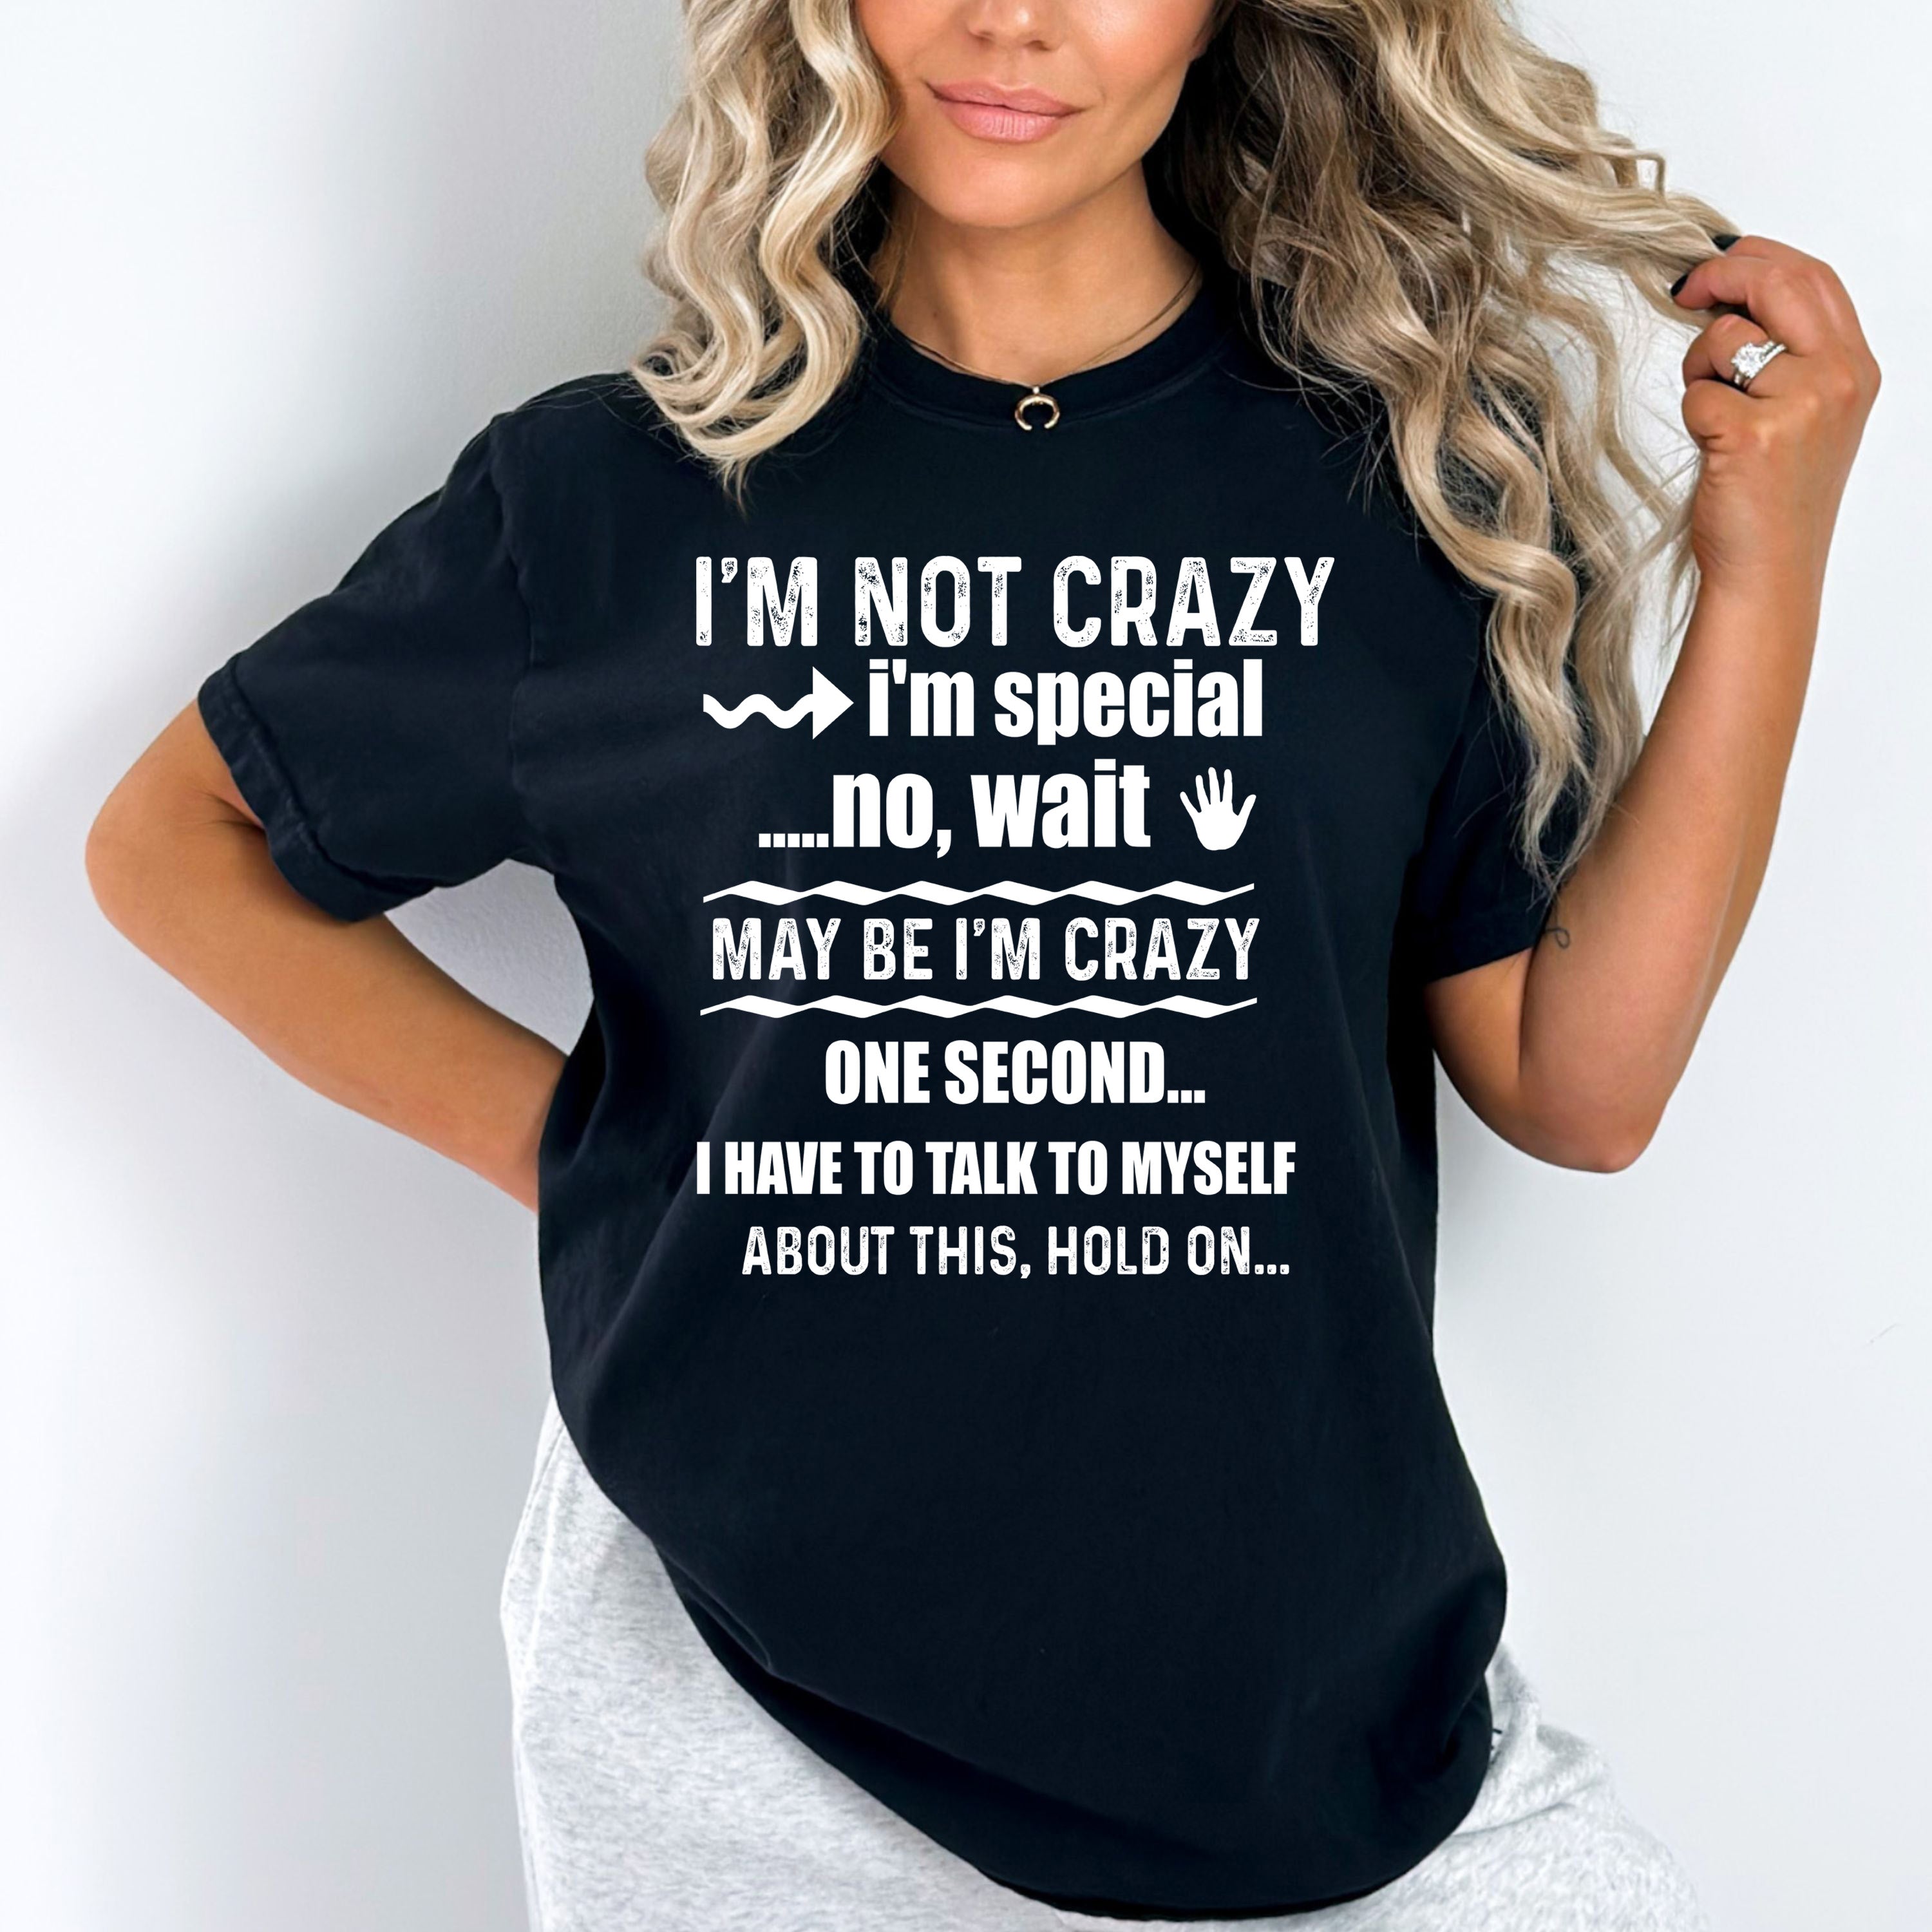 "I'M NOT CRAZY I'M SPECIAL"-WHITE WORDING.